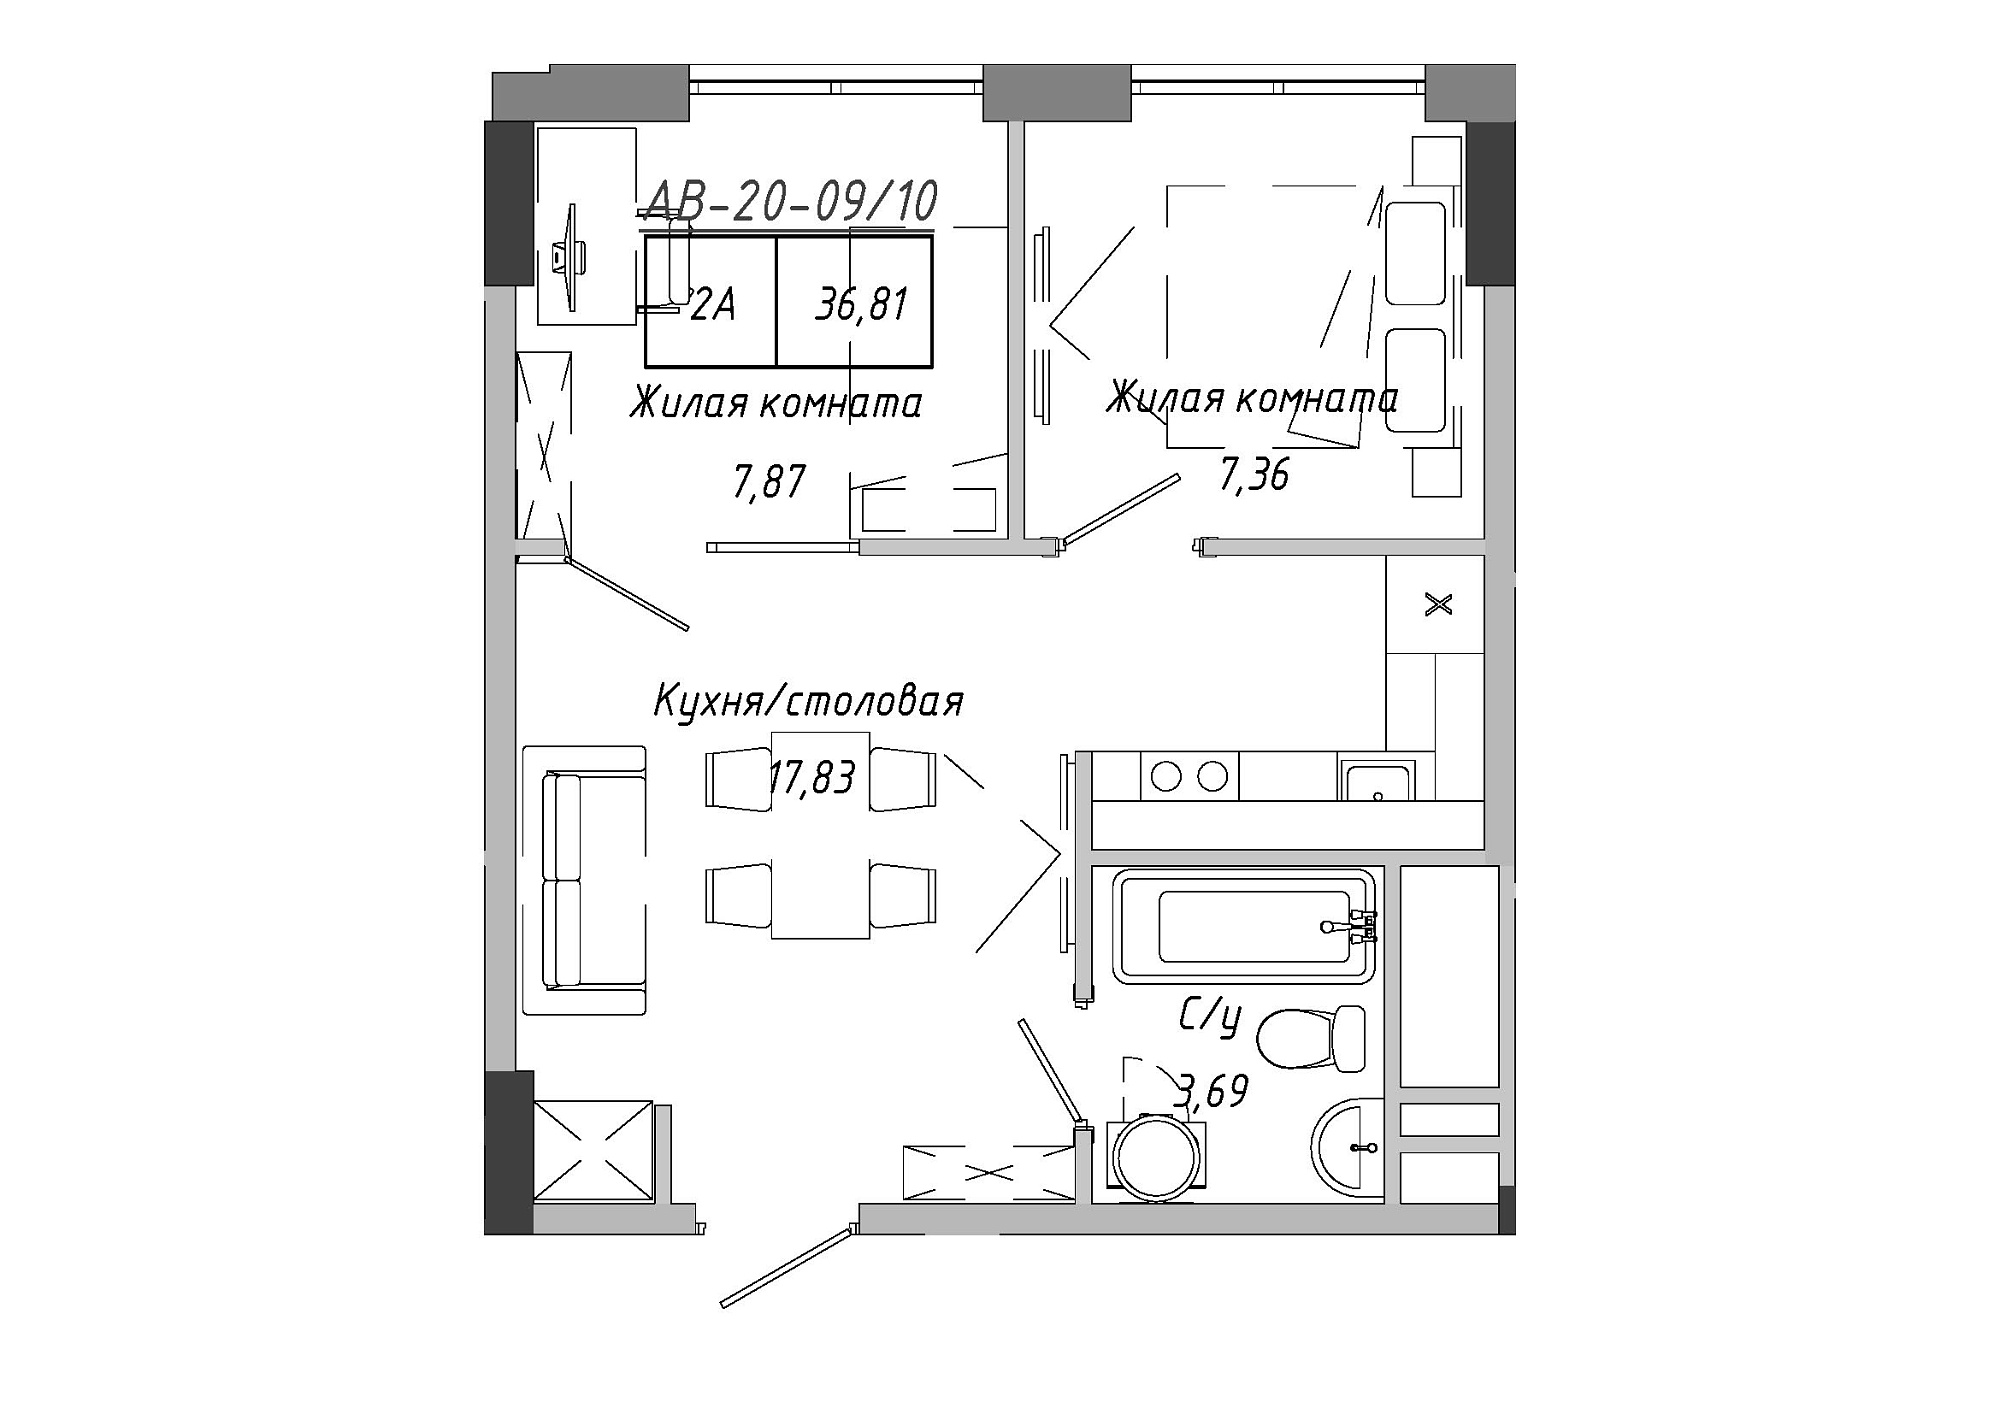 Планировка 2-к квартира площей 37.15м2, AB-20-09/00010.